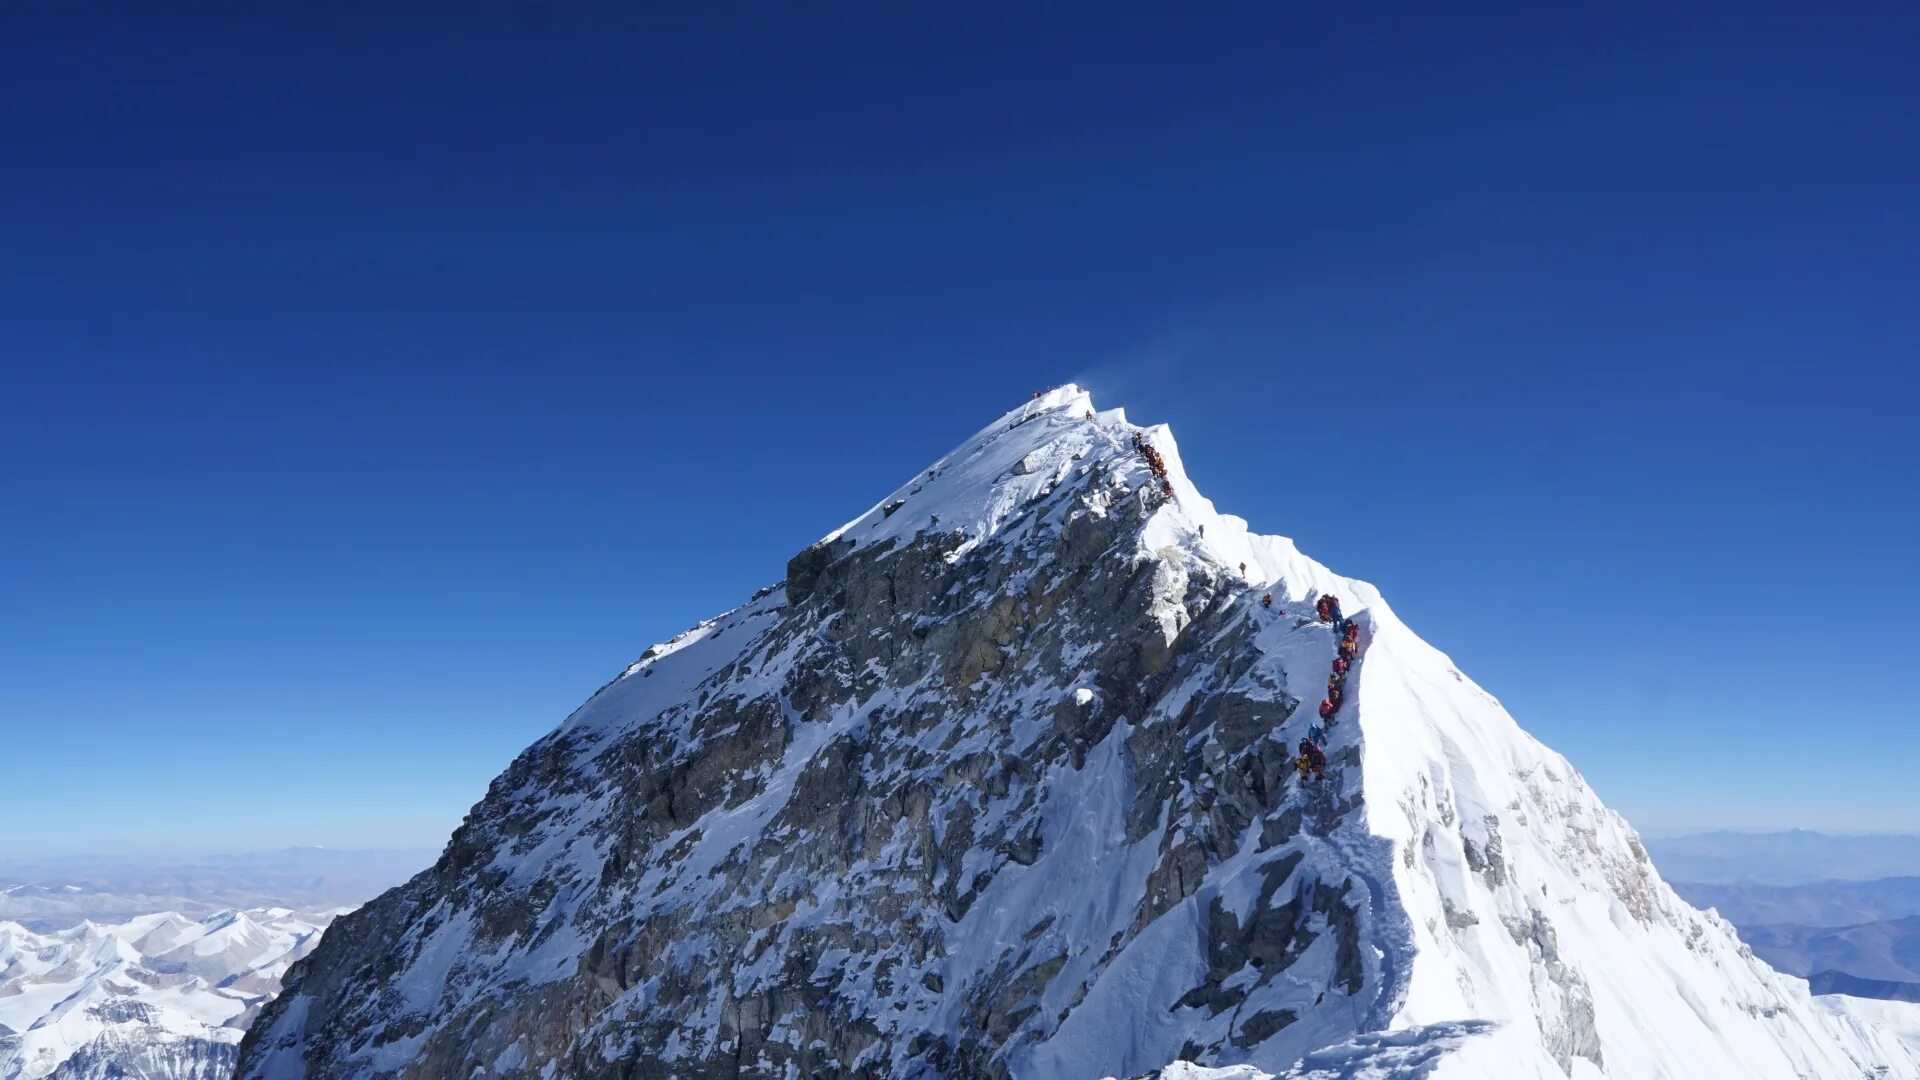 Укажите самую высокую горную вершину. 8848 Метров Эверест. Гора Джомолунгма. Эверест высокая гора. Самая высокая гора в мире Джомолунгма высота.